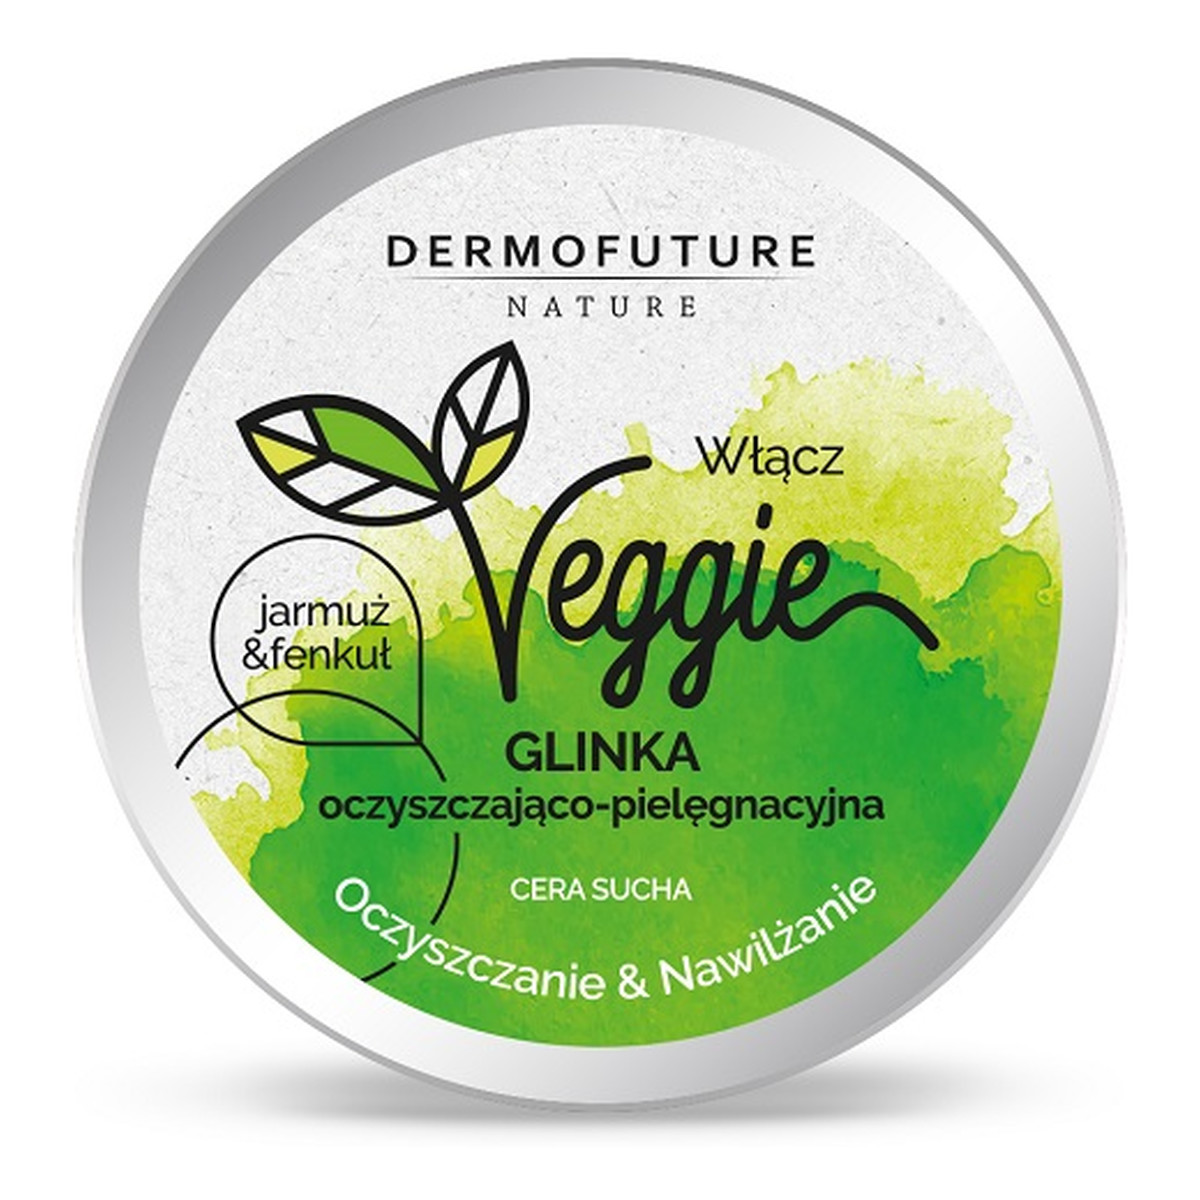 DermoFuture Veggie clay cleansing moisturizing glinka oczyszczająco-pielęgnacyjna cera sucha jarmuż & fenkuł 150ml